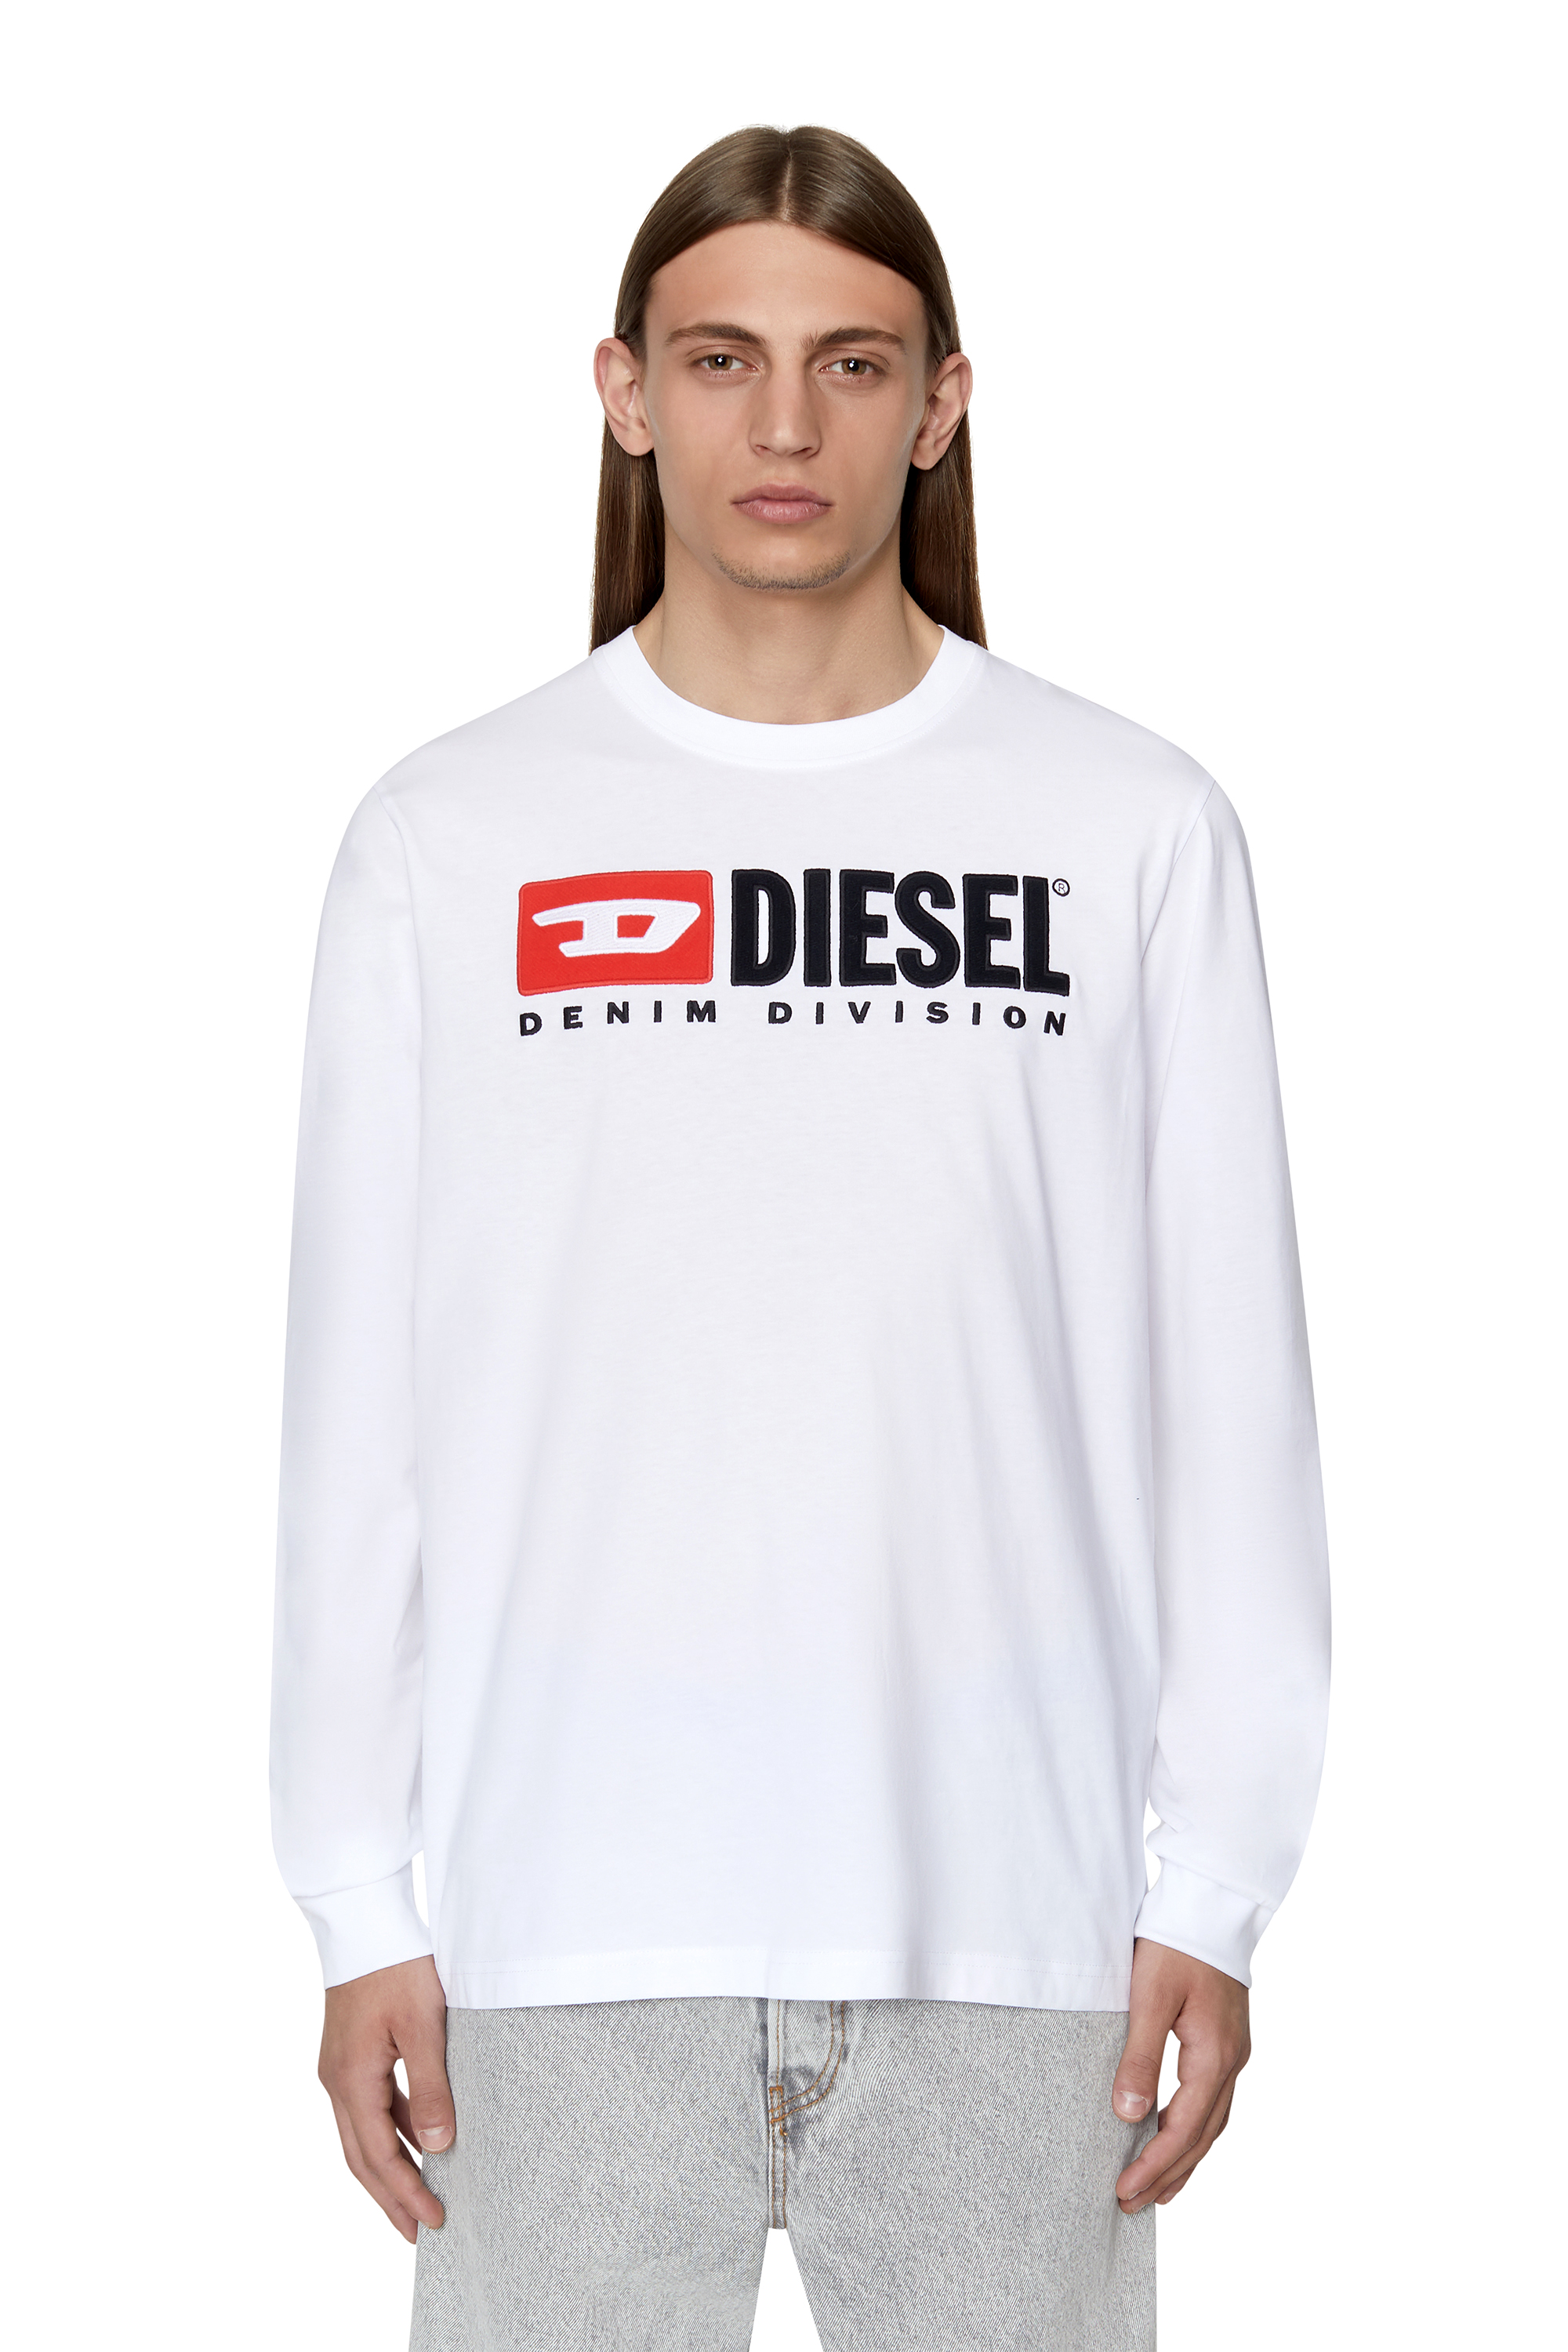 メンズDIESEL ディーゼル ロングT-shirt-2 - dibrass.com